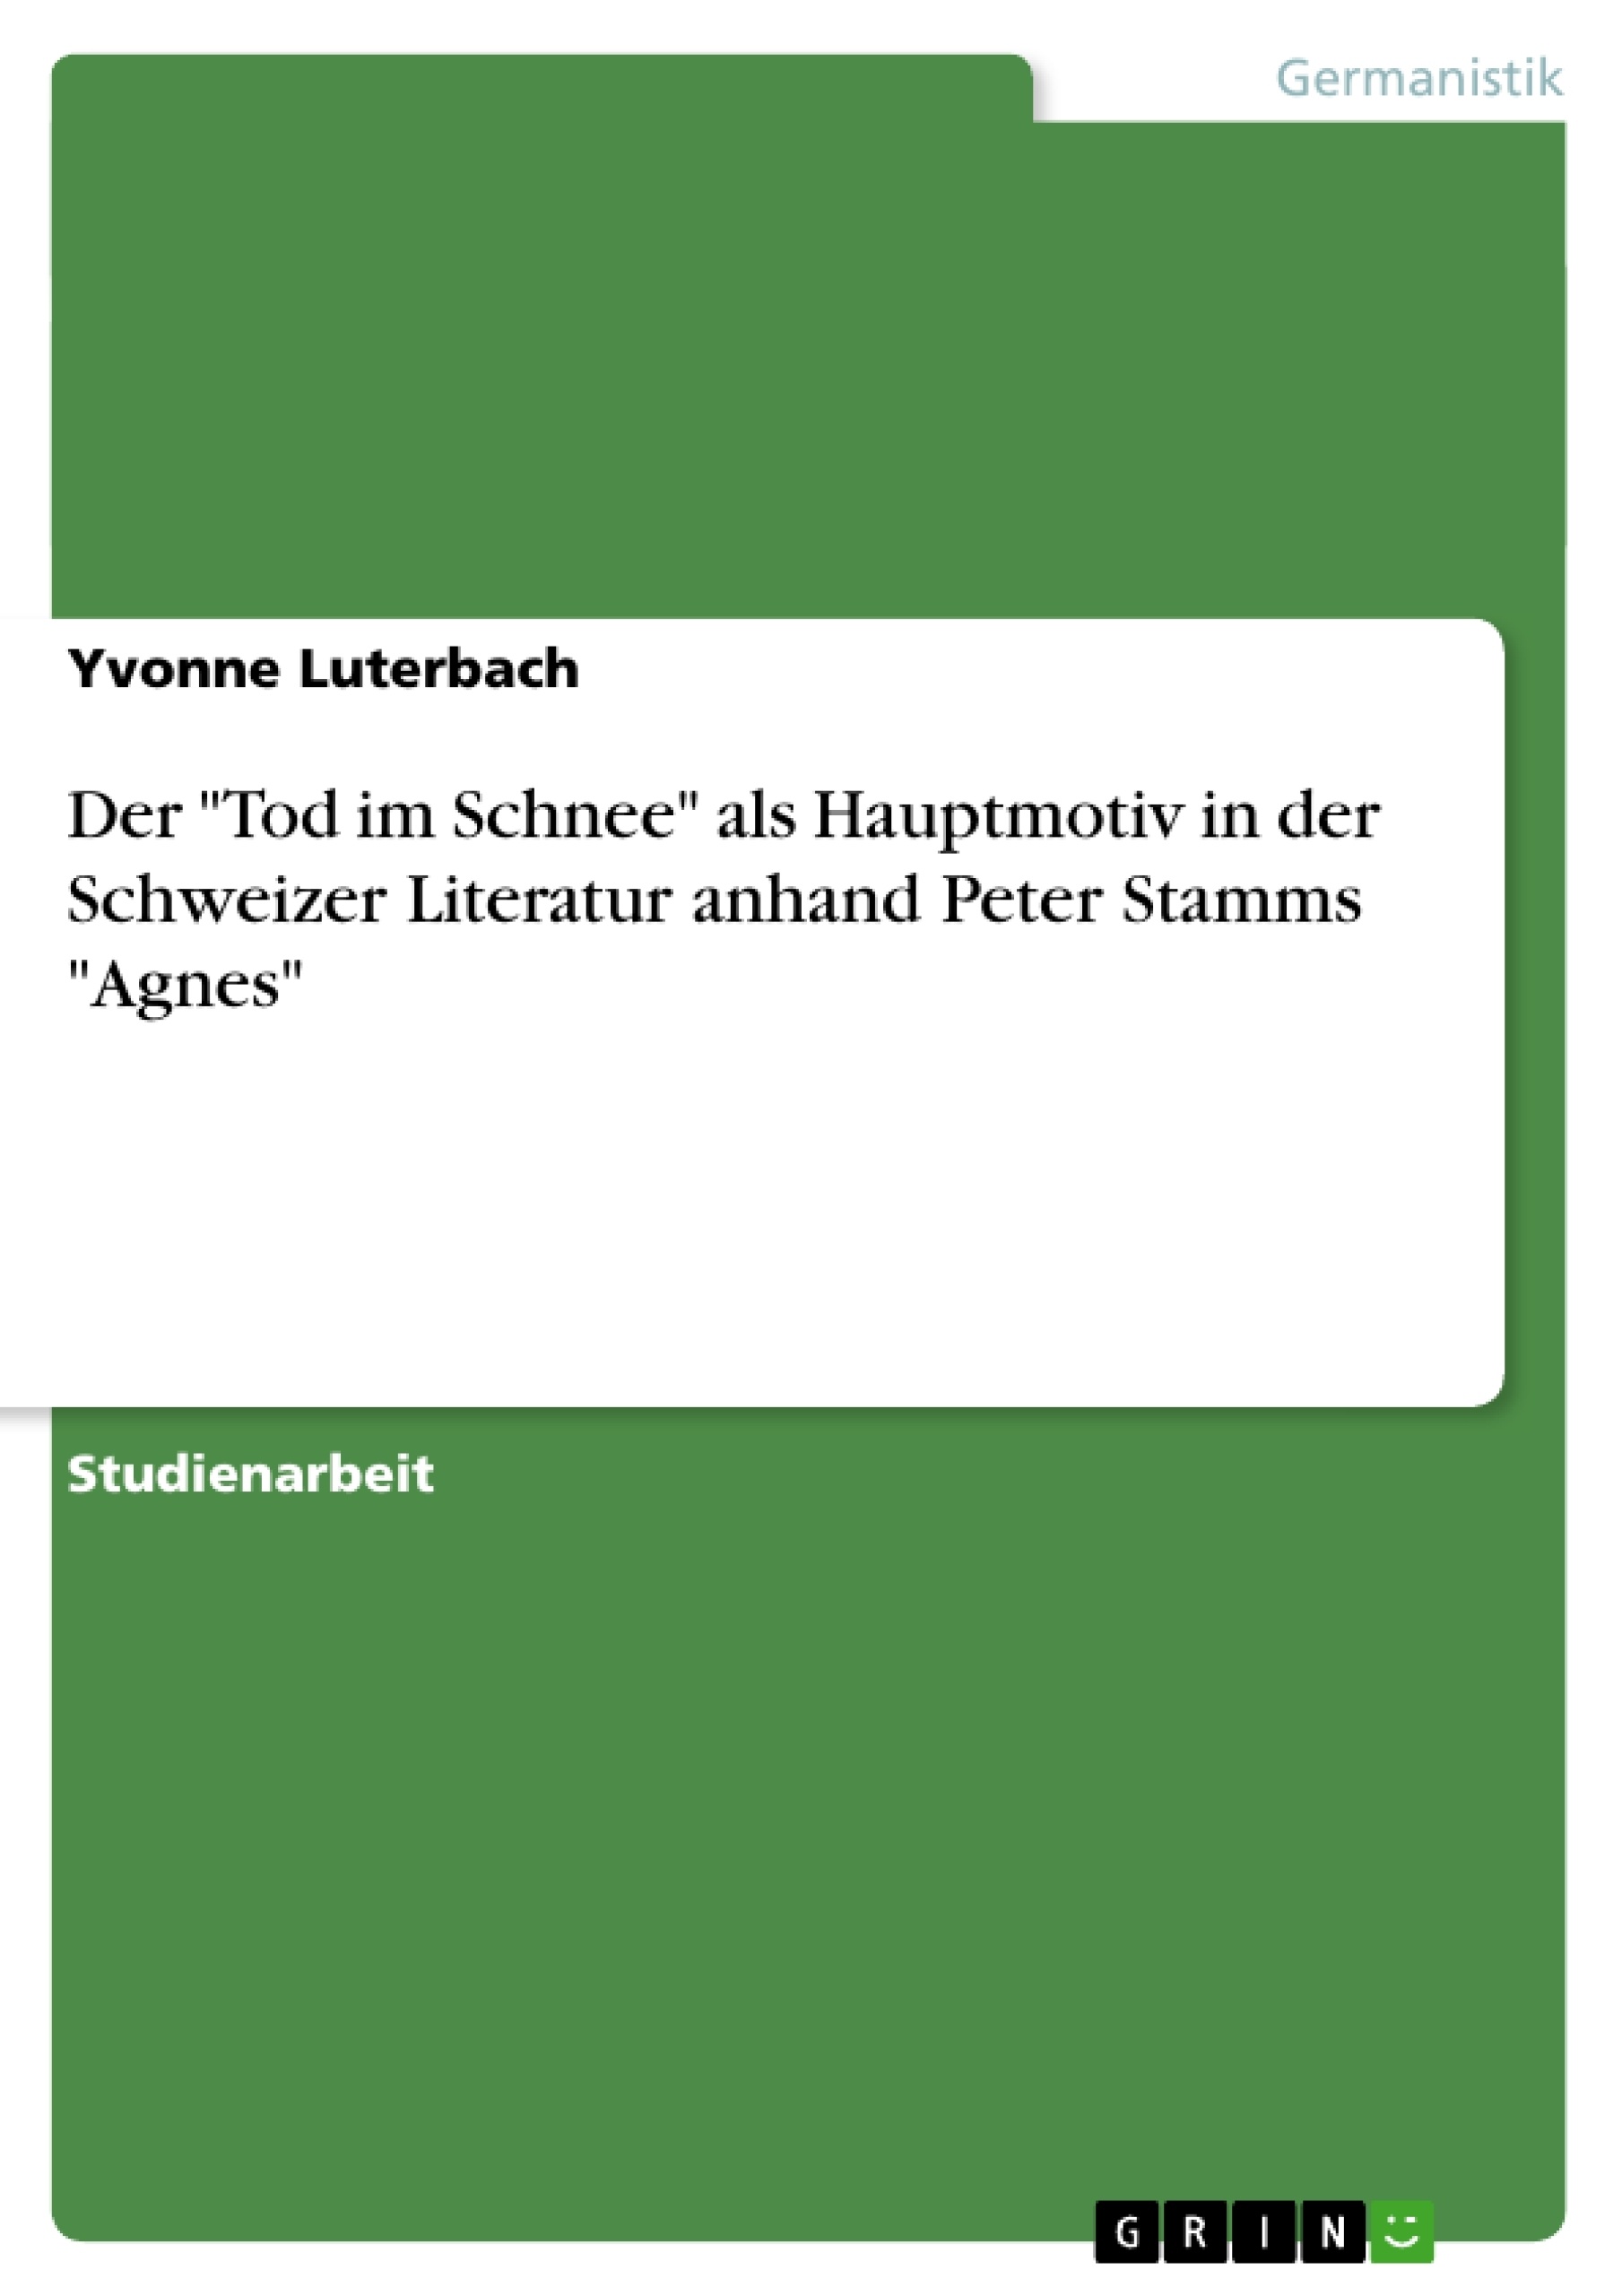 Título: Der "Tod im Schnee" als Hauptmotiv in der Schweizer Literatur anhand Peter Stamms "Agnes"